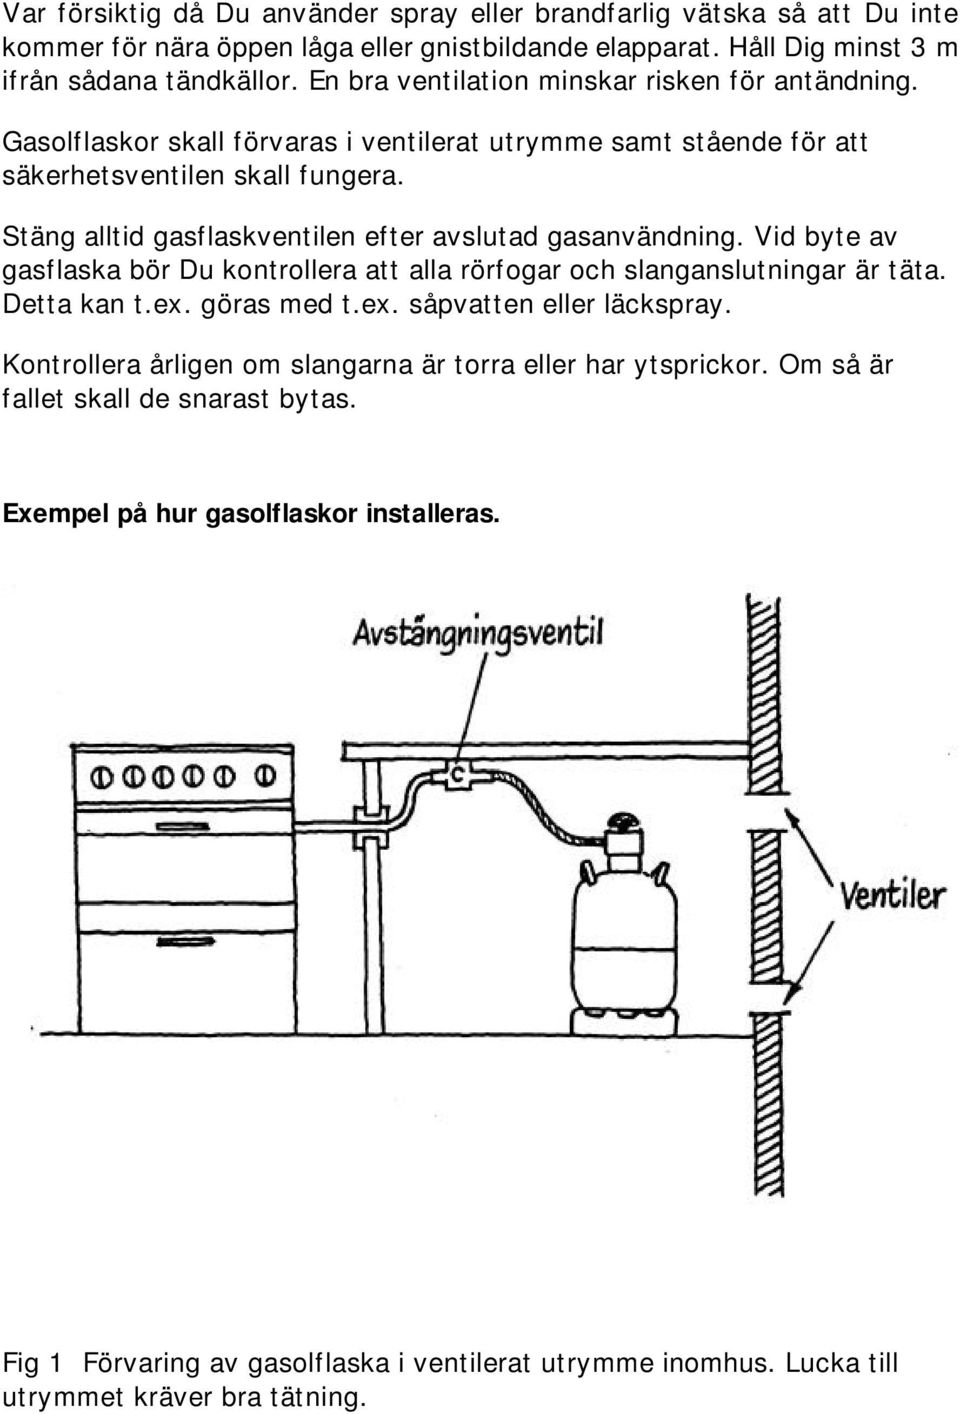 Stäng alltid gasflaskventilen efter avslutad gasanvändning. Vid byte av gasflaska bör Du kontrollera att alla rörfogar och slanganslutningar är täta. Detta kan t.ex. göras med t.ex. såpvatten eller läckspray.